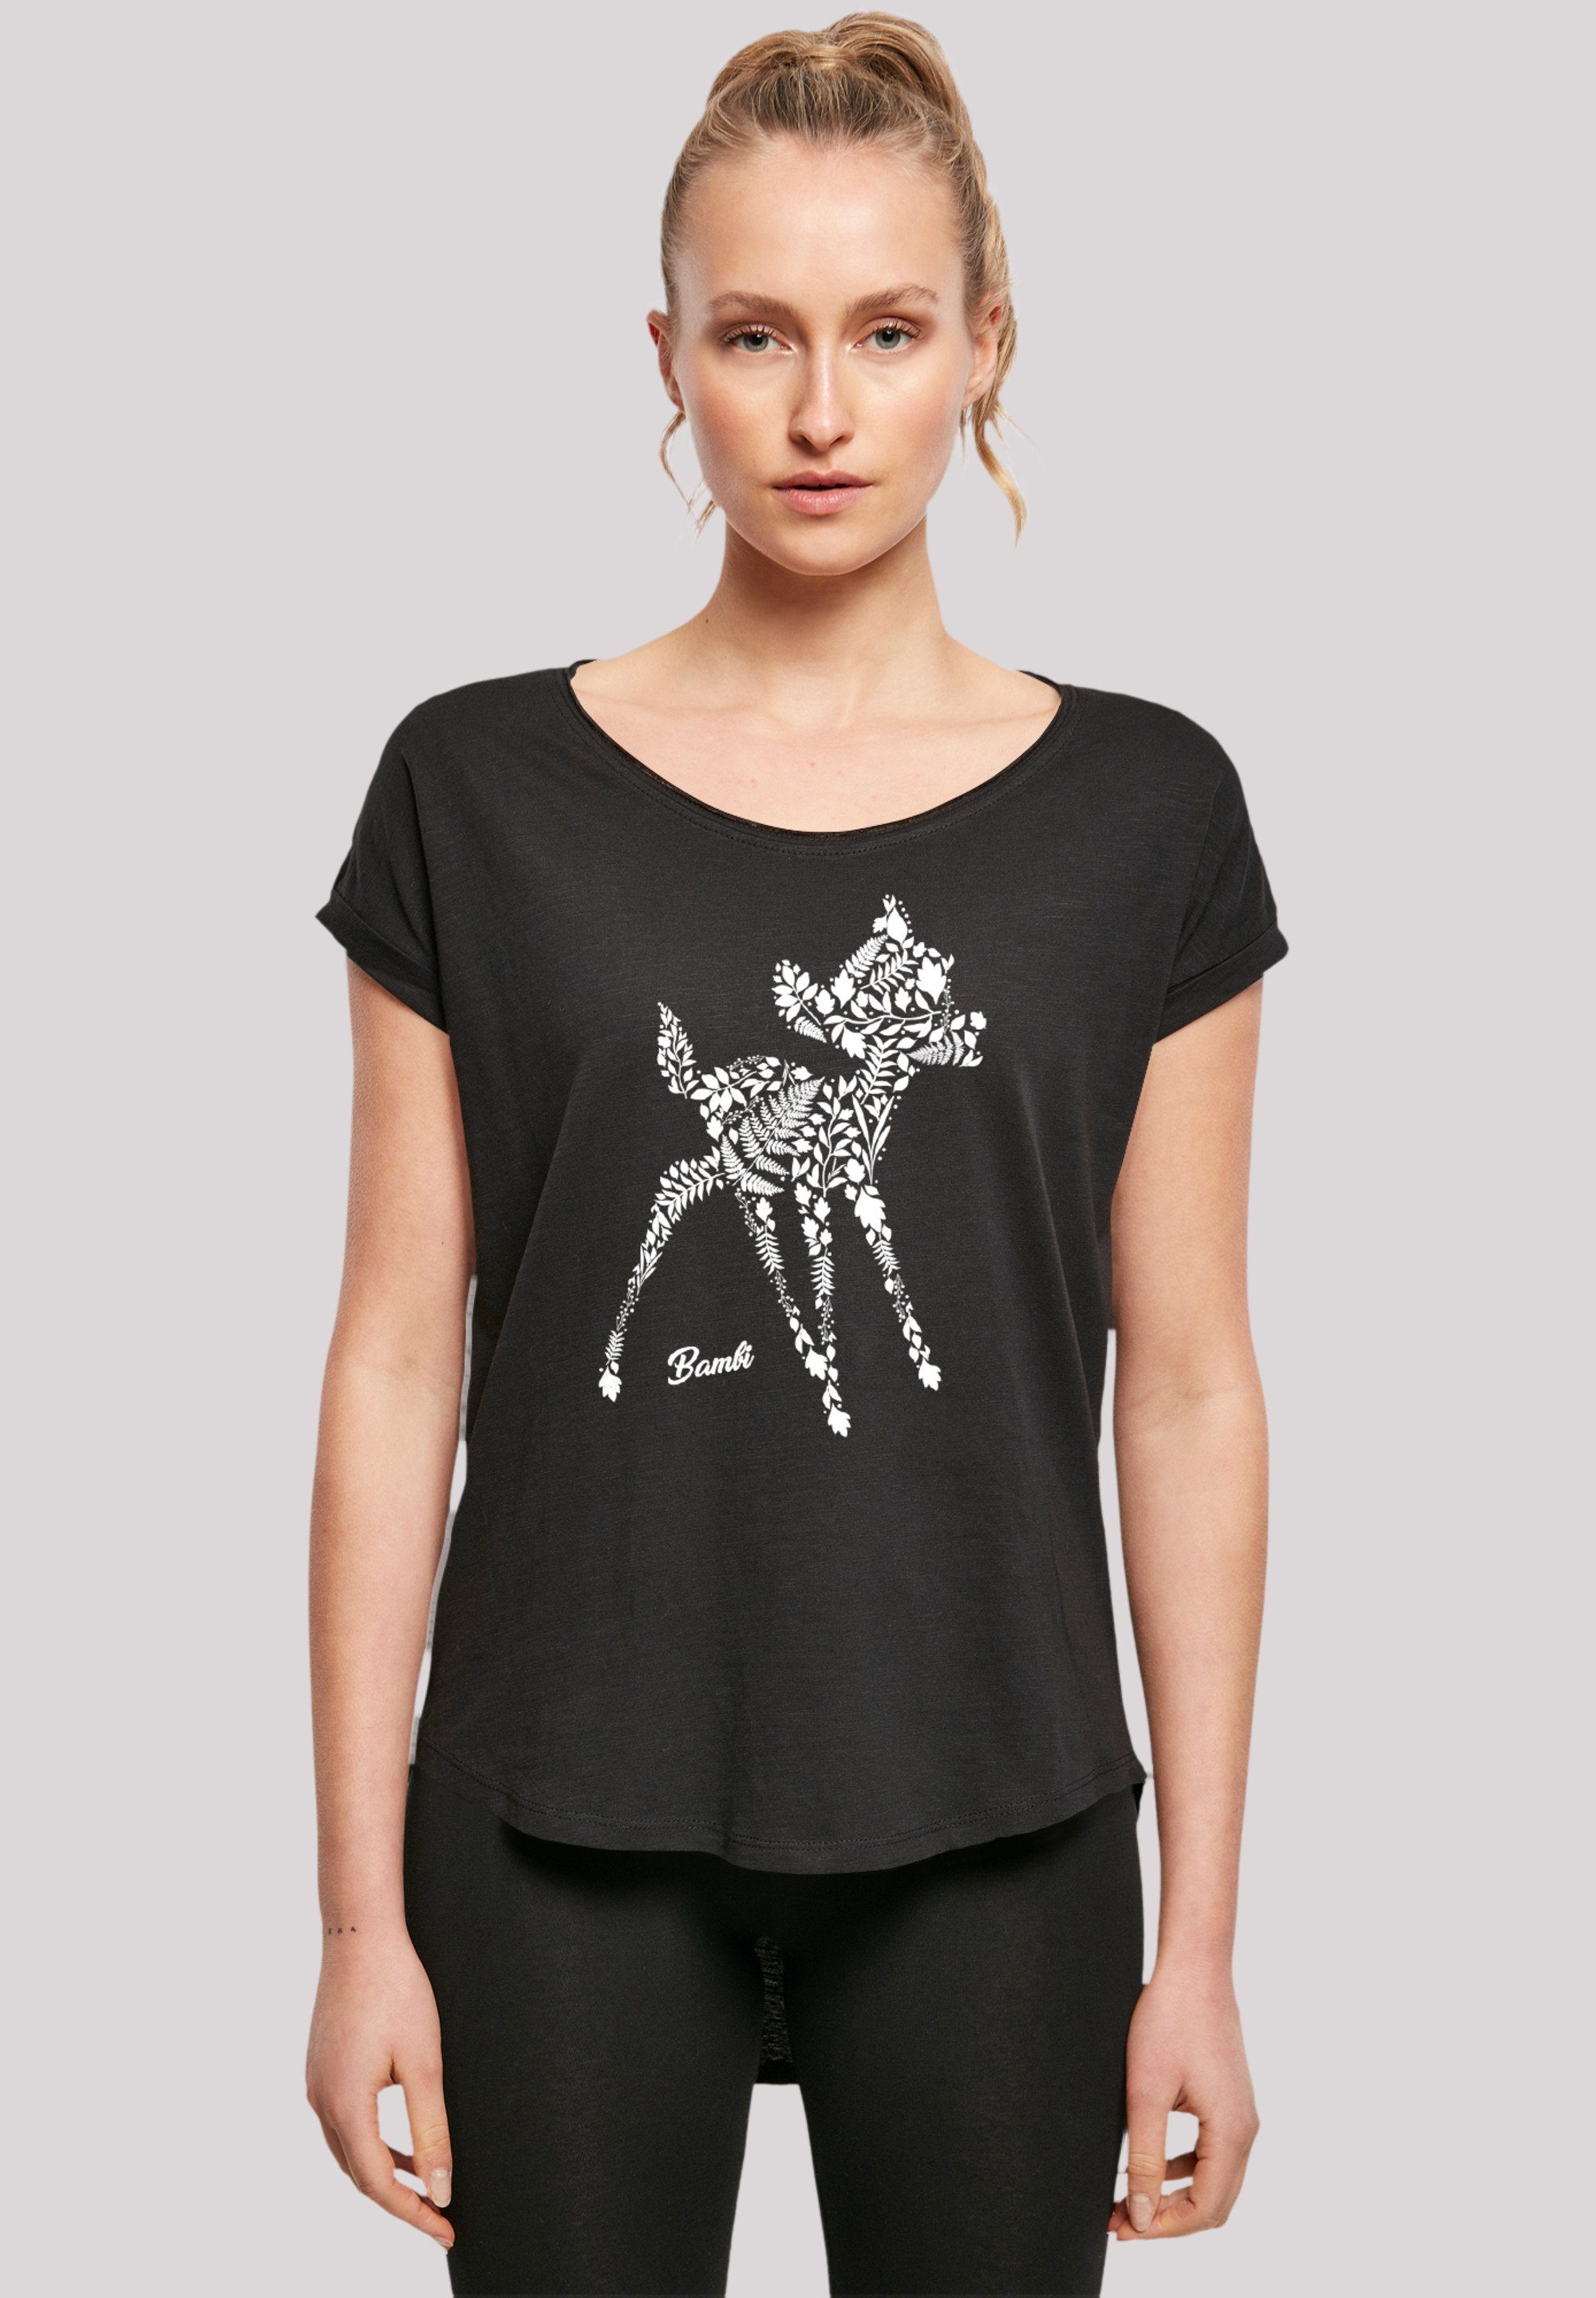 Botanica hohem mit T-Shirt Qualität, Baumwollstoff Bambi Tragekomfort Premium Sehr Disney F4NT4STIC weicher